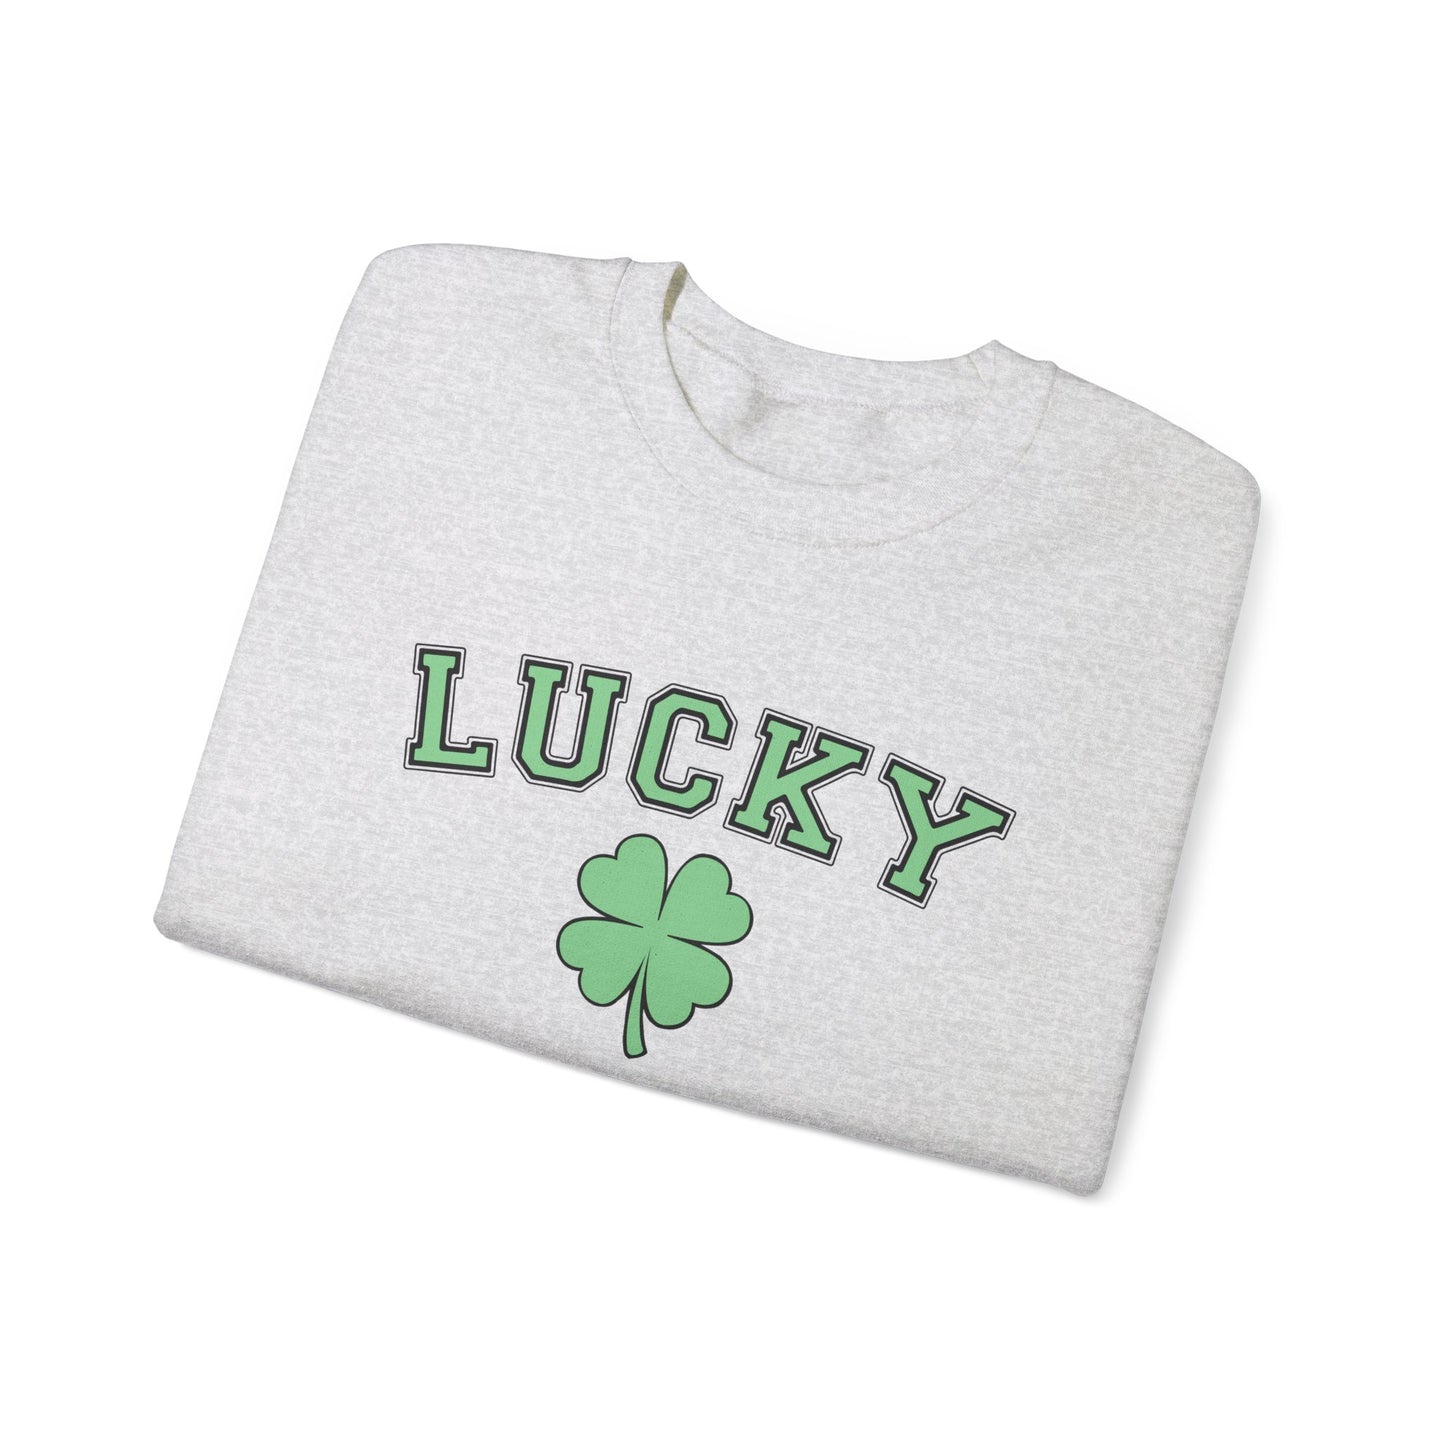 Lucky Crewneck Sweatshirt